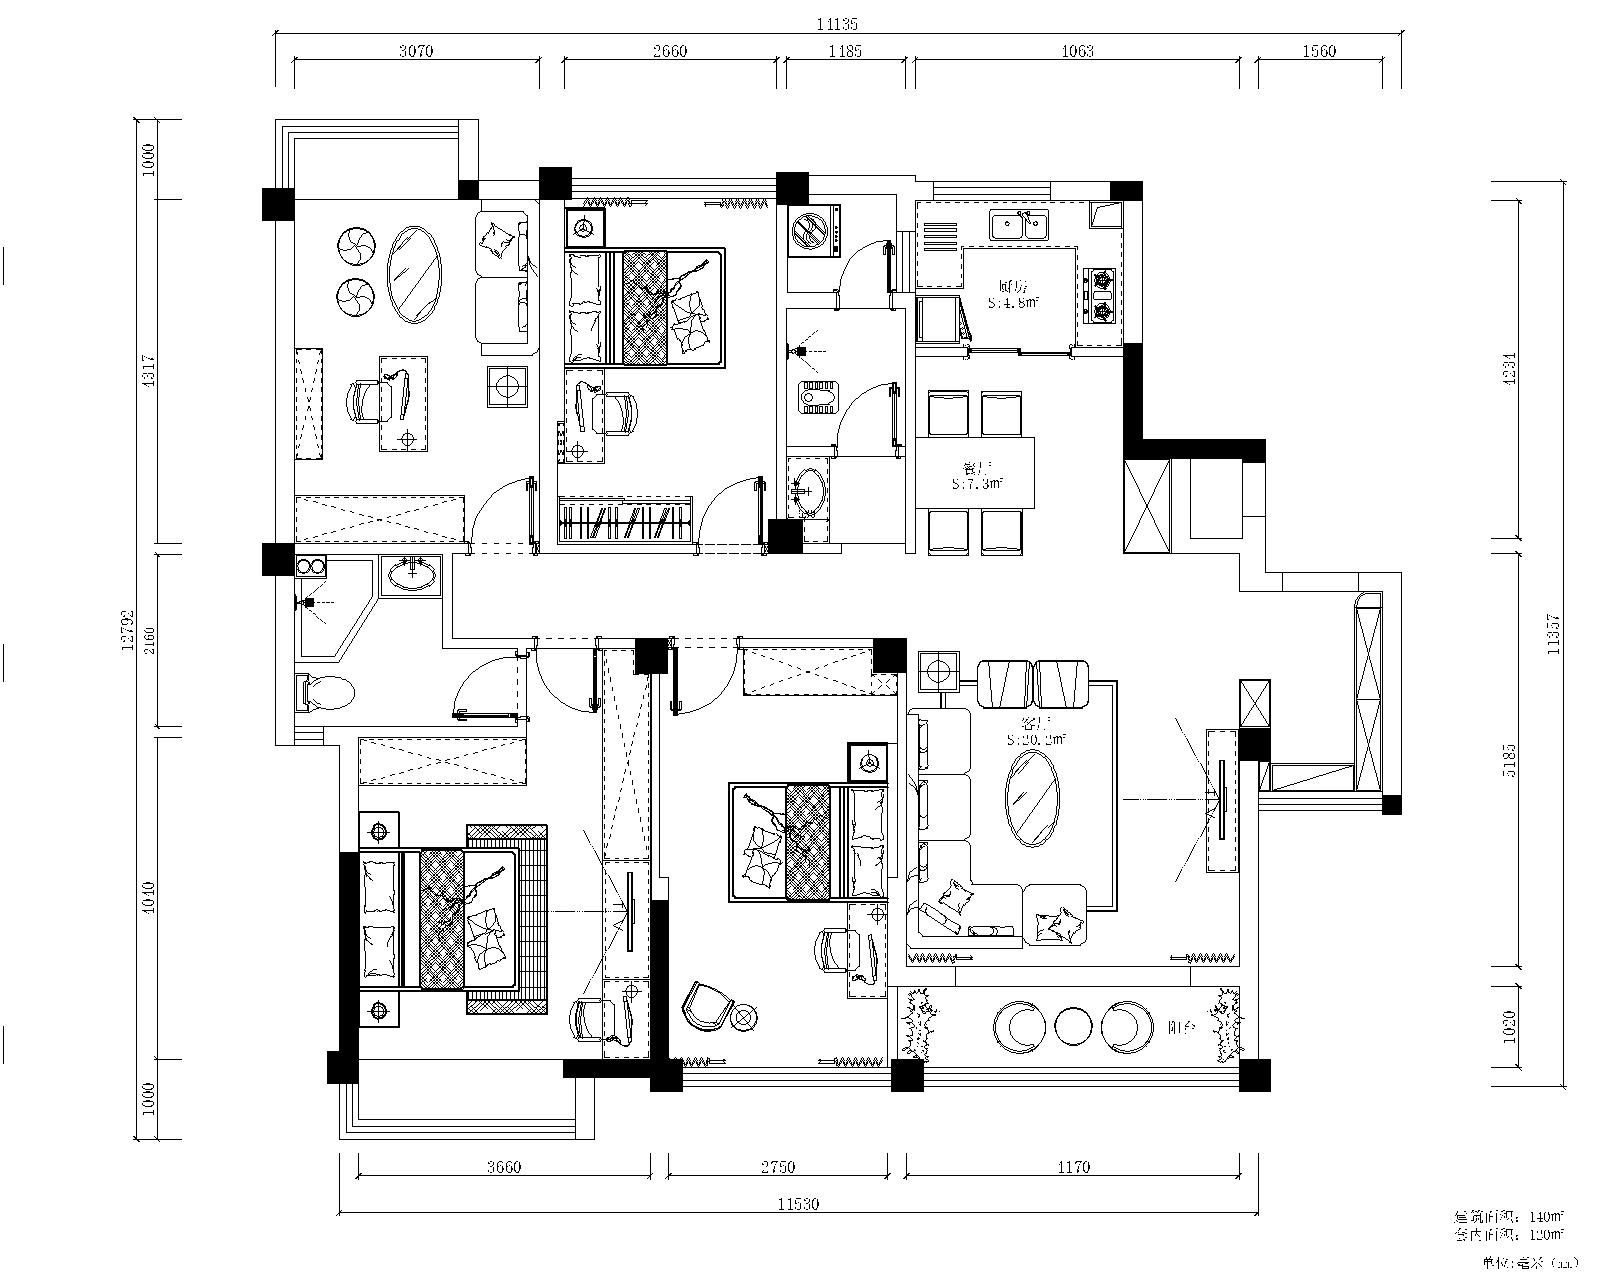 中式风格装修效果图四住宅142.8平方米家装案例-成都家装保姆装修网-家装保姆-罗小红成都家装设计